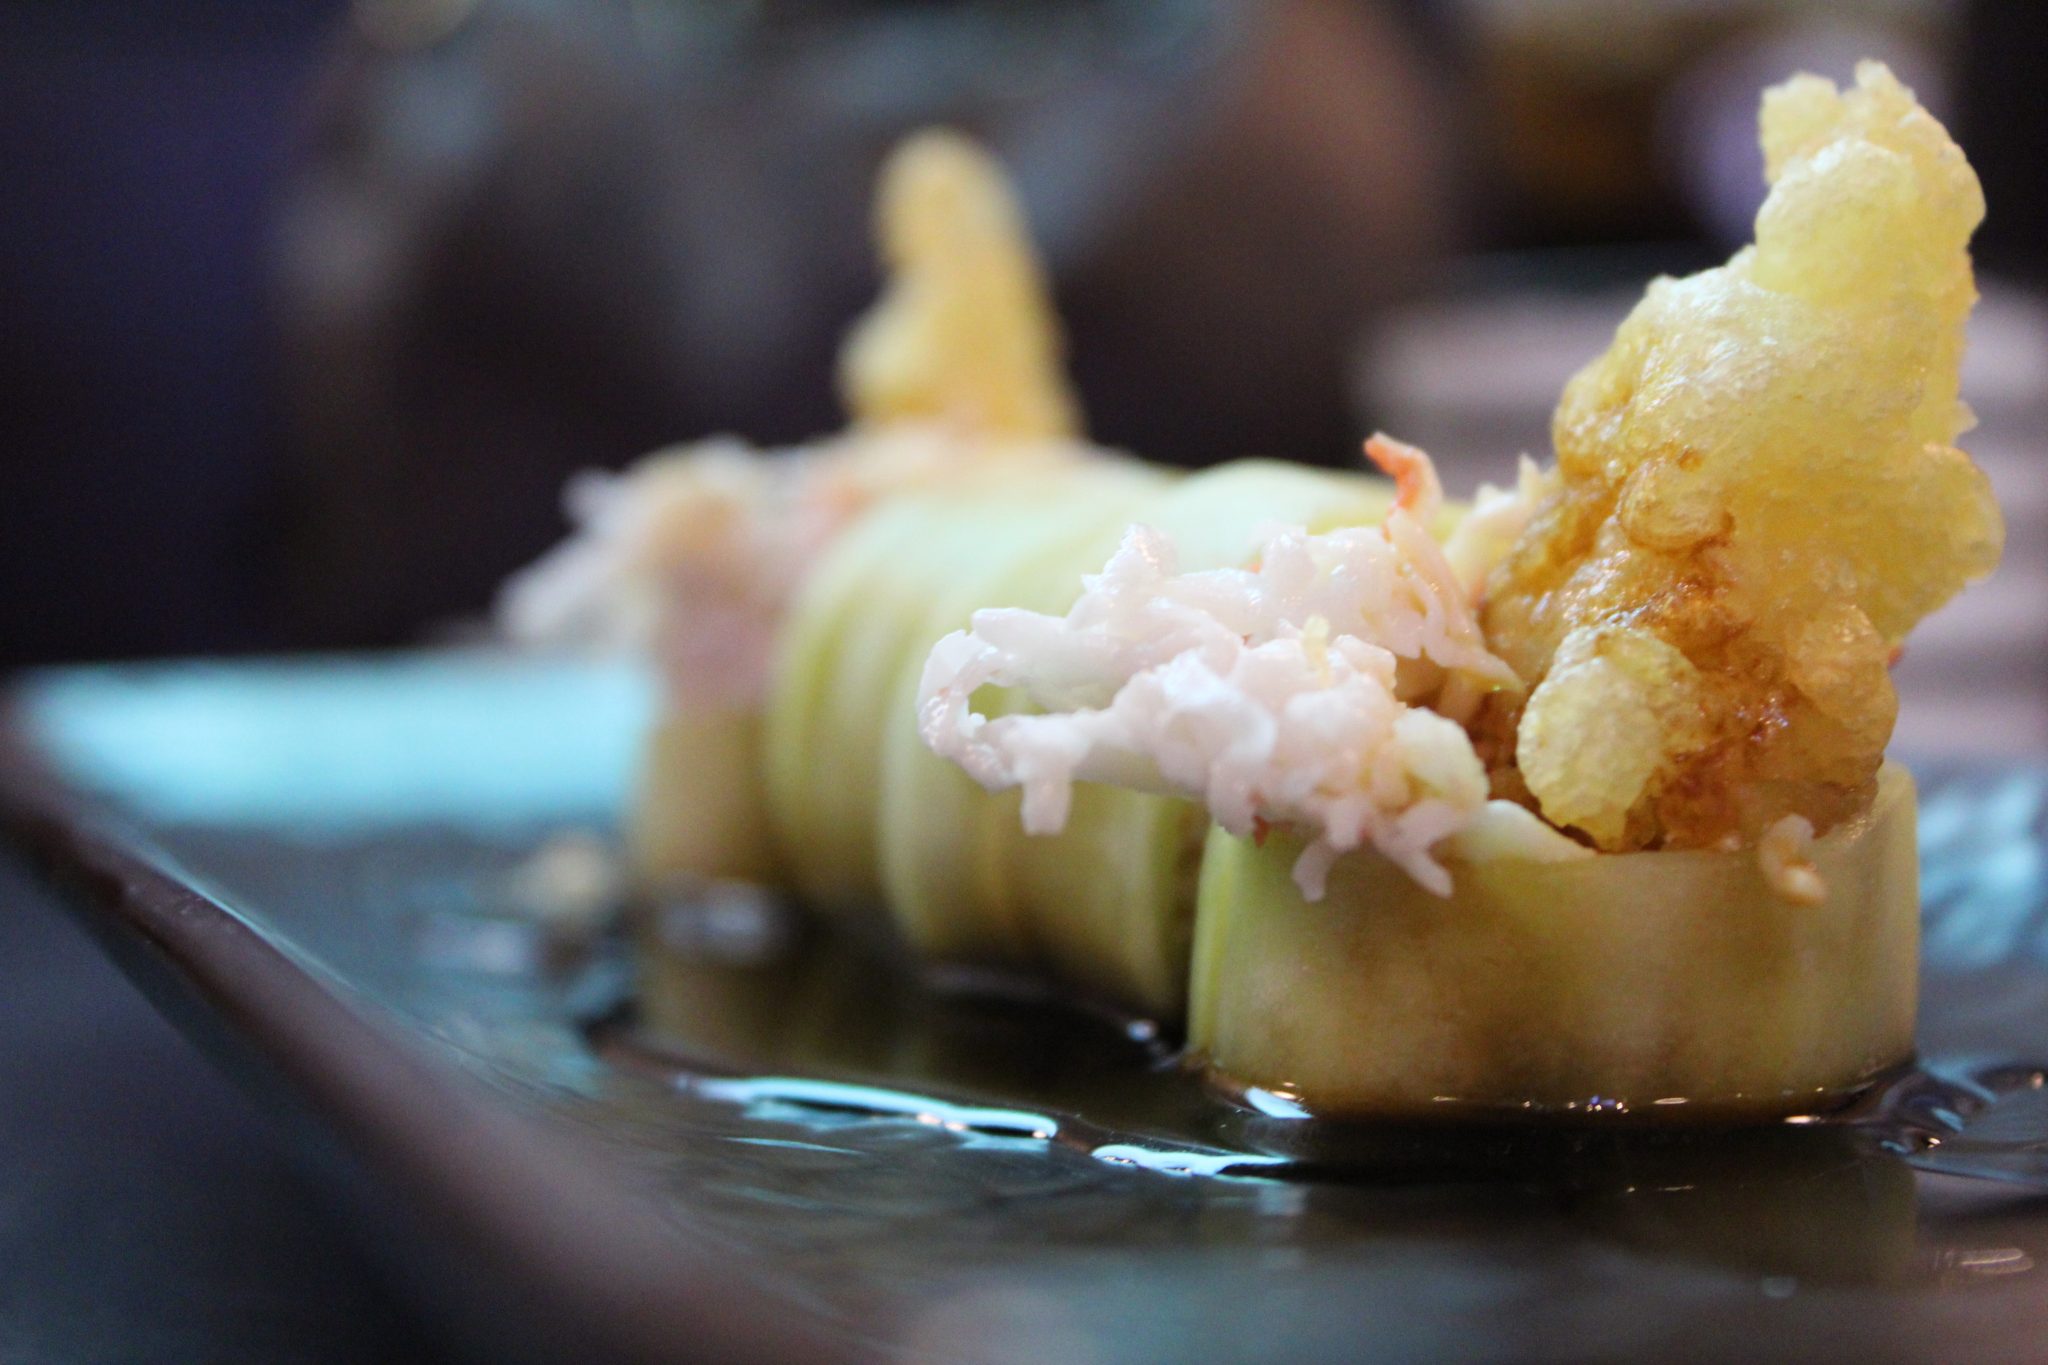 sushi rolls with shrimp tempura and cucumber